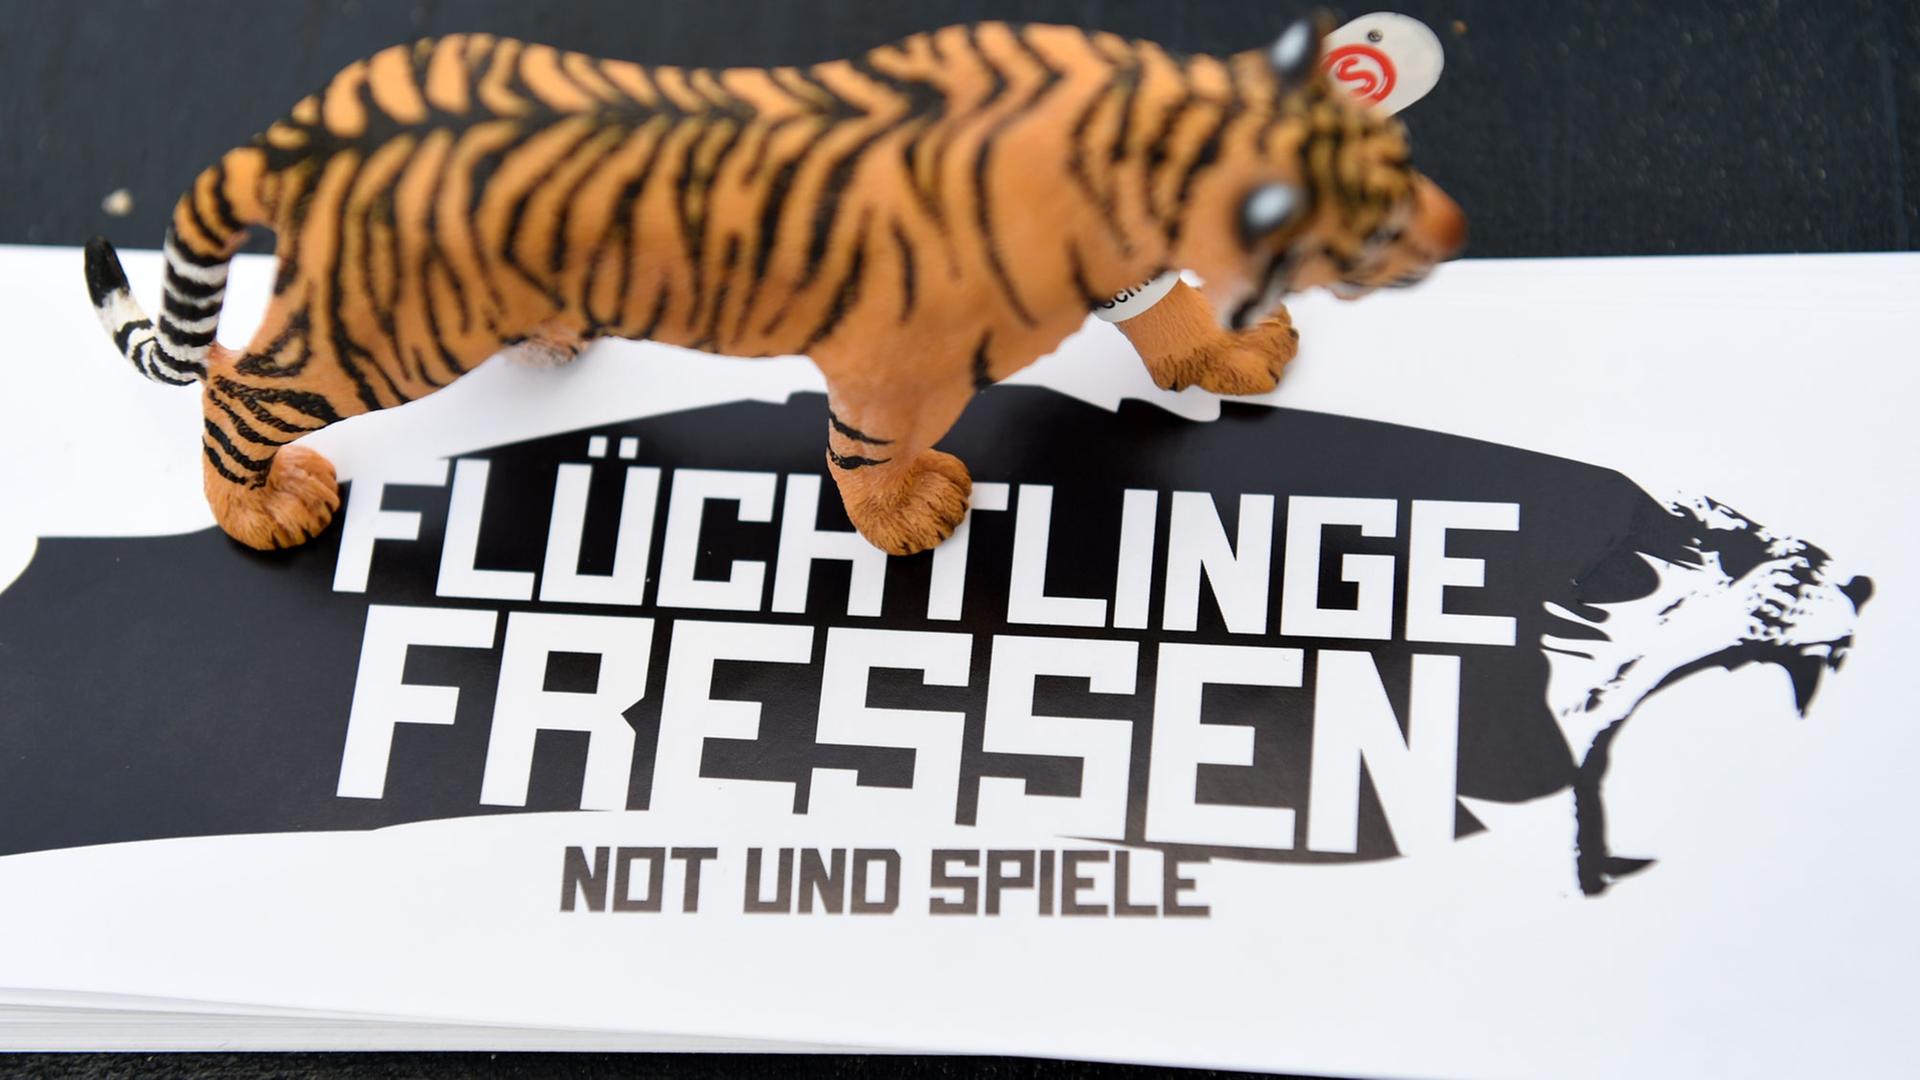 Ein schwarz-weißer Aufkleber mit der Aufschrift "Flüchtlinge fressen - Not und Spiele", auf dem eine Tigerfigur steht.